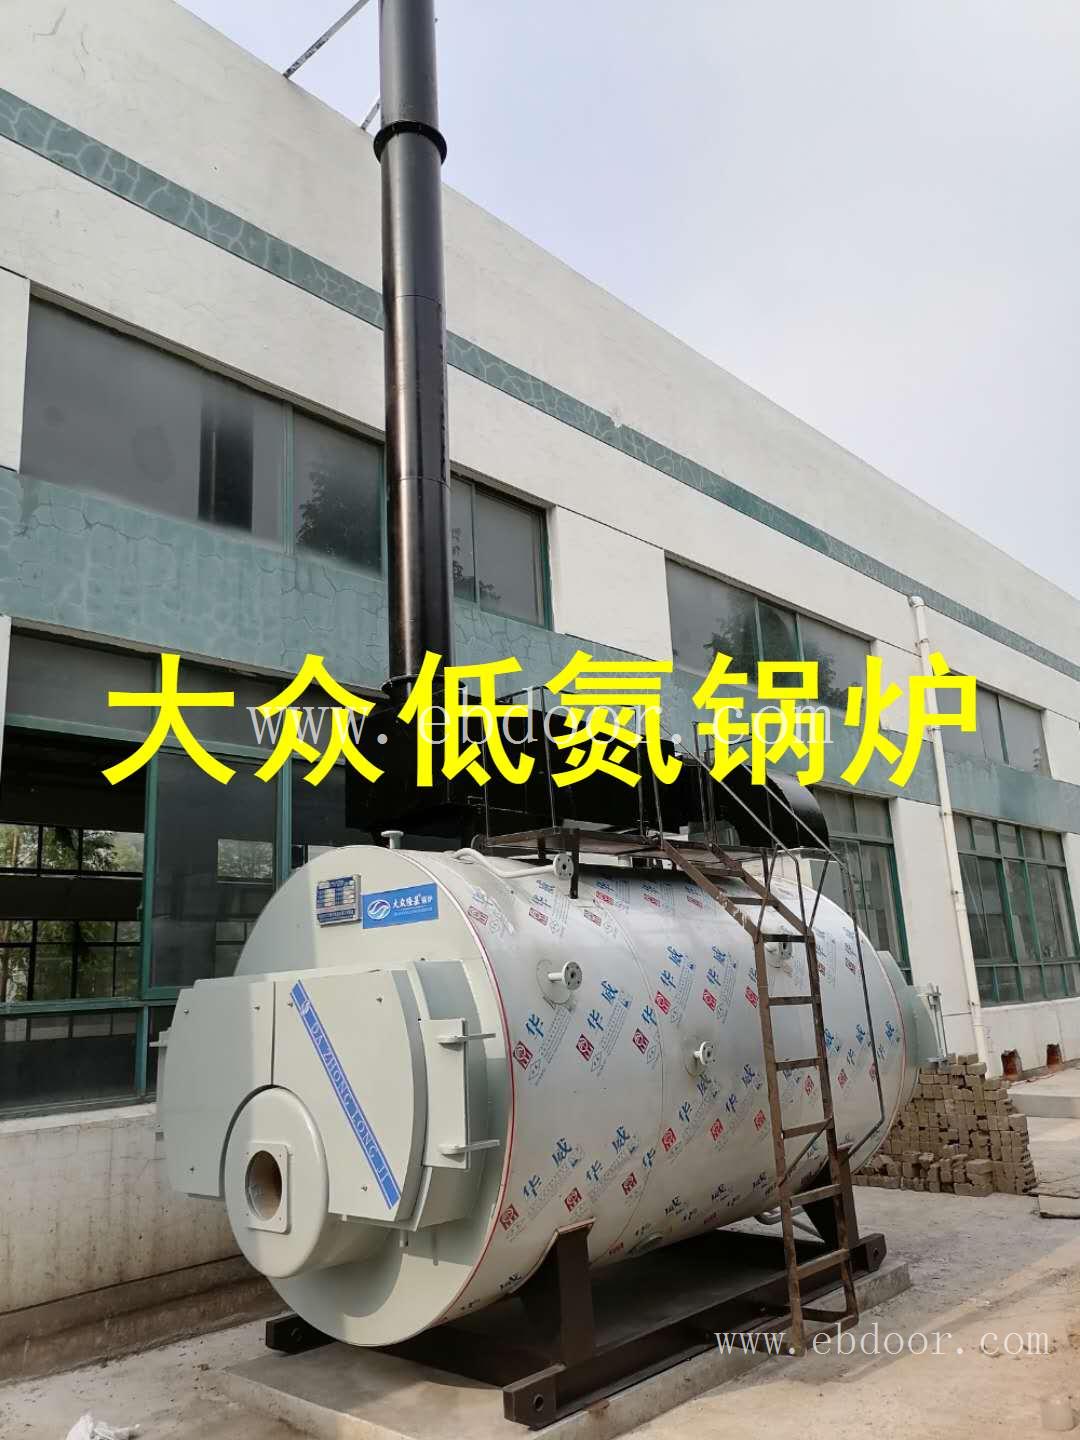 WNS卧式内燃三回程燃气锅炉性能 江苏低氮冷凝燃气锅炉厂家 南京南通锅炉厂